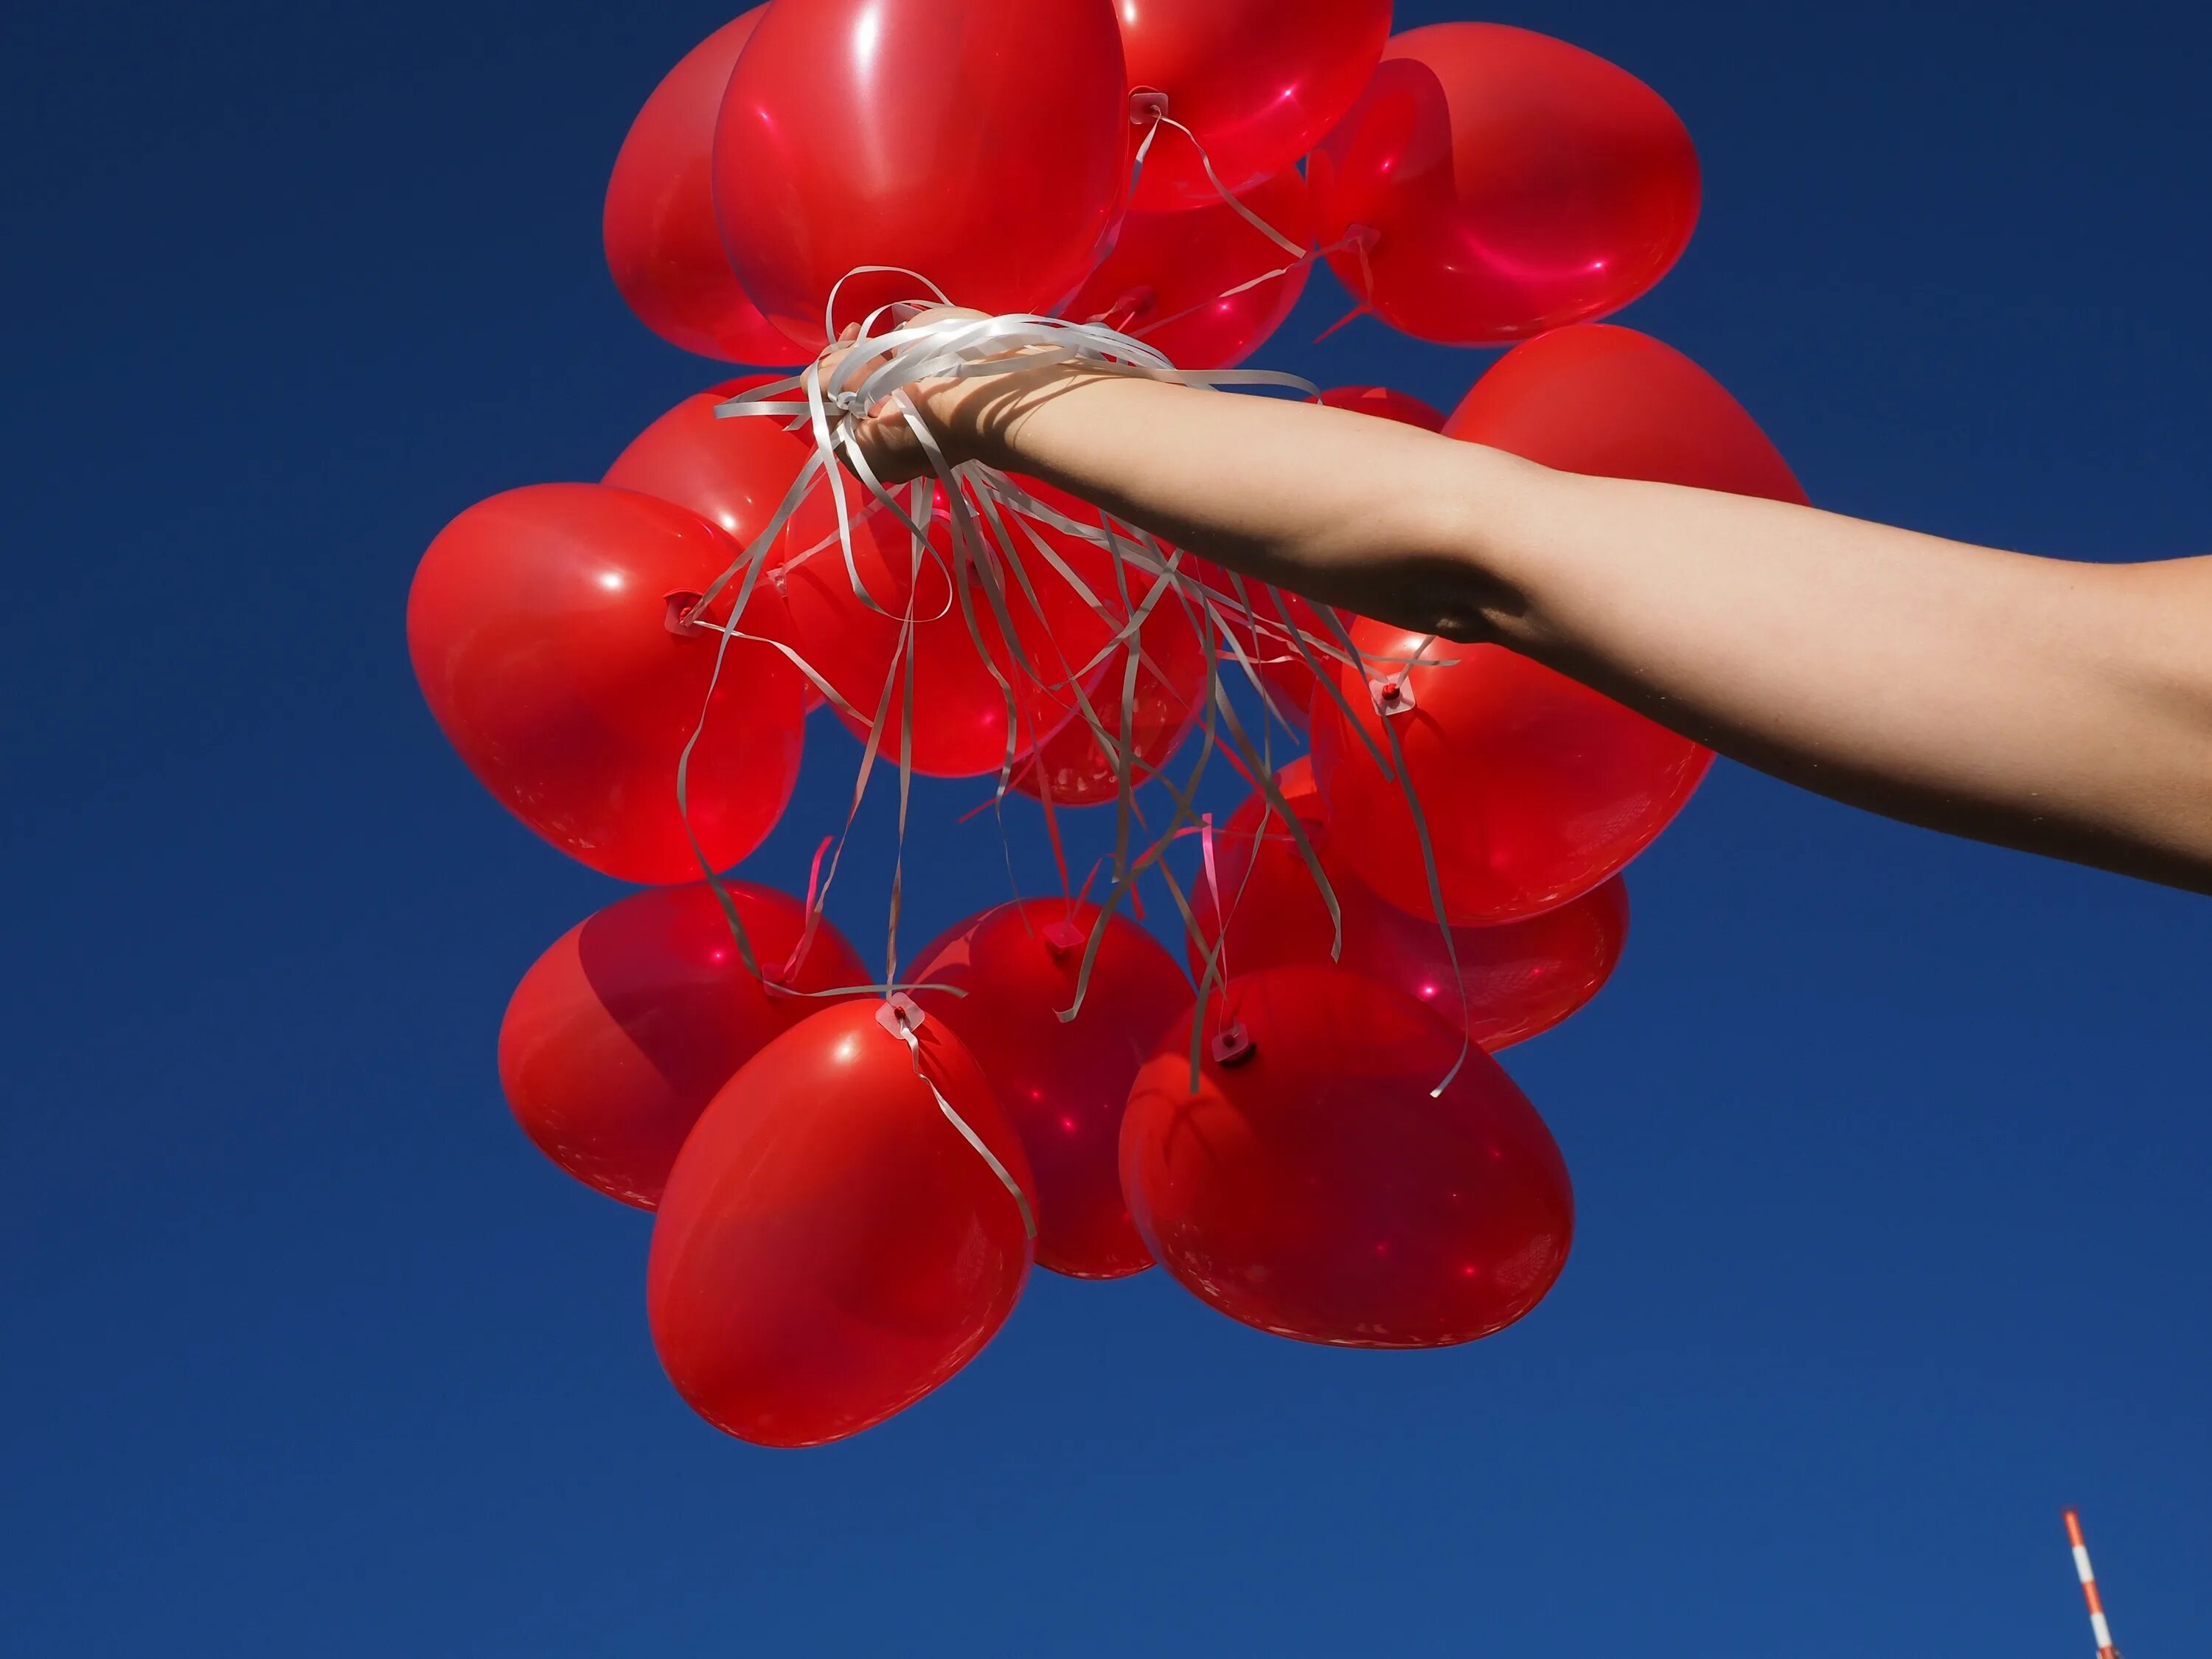 Шарики воздушные послушные. Шары в руке. Красные шары. Охапка красных шаров. Шарики красны красивые.